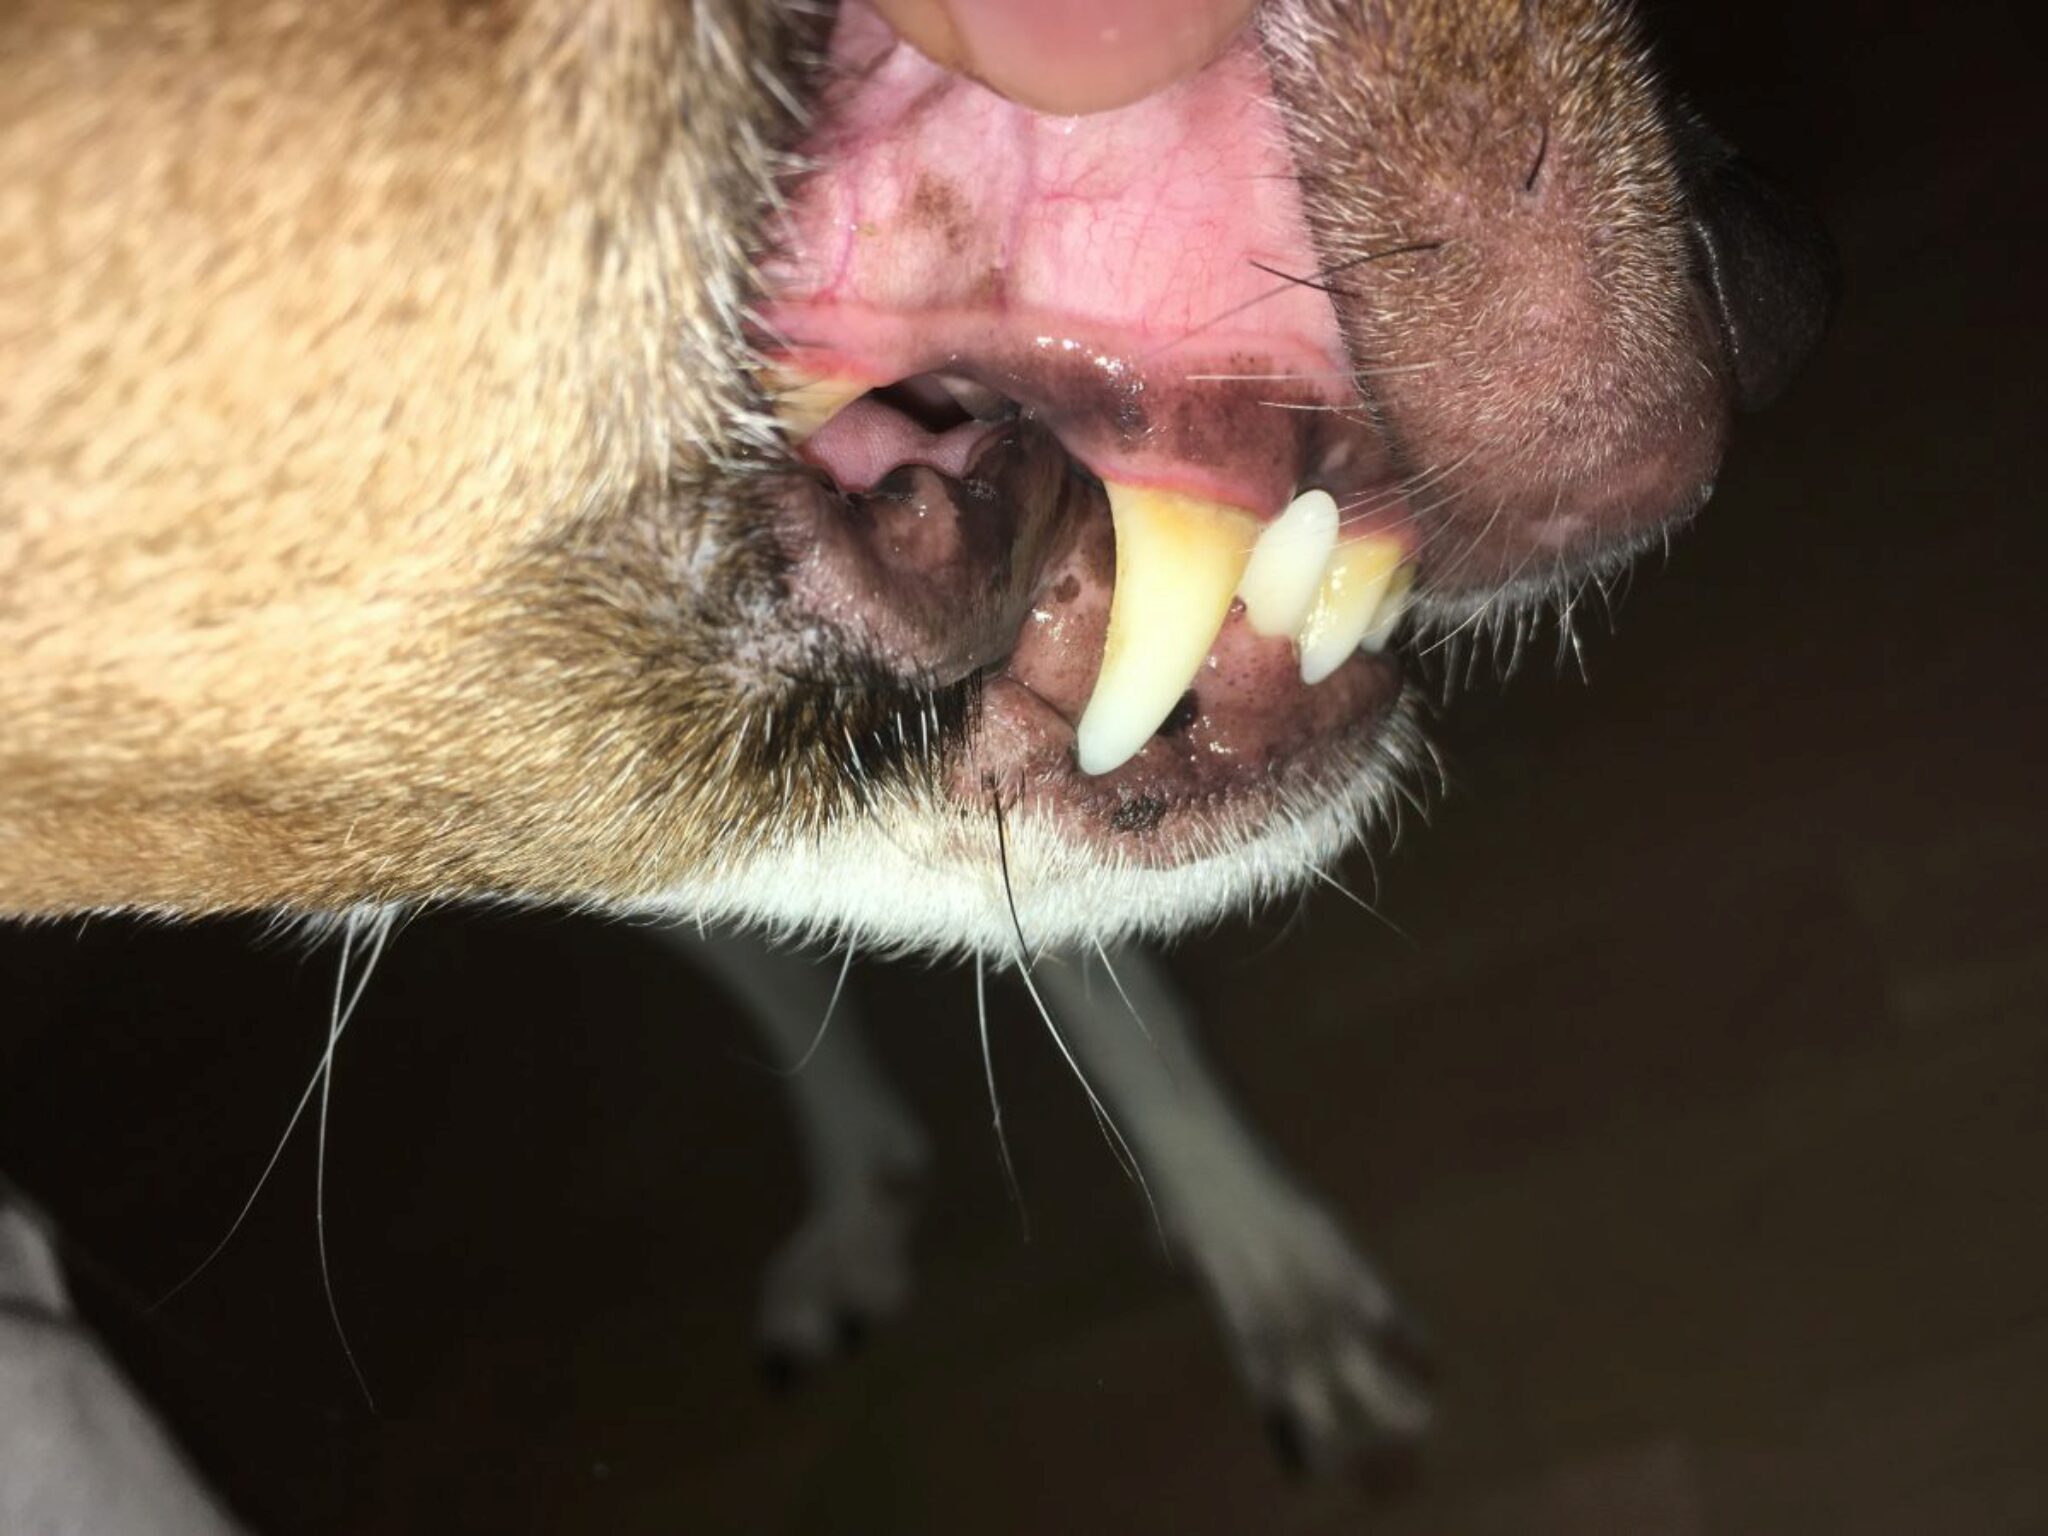 Hat Mein Hund Eine Zahnfleischerkrankung?